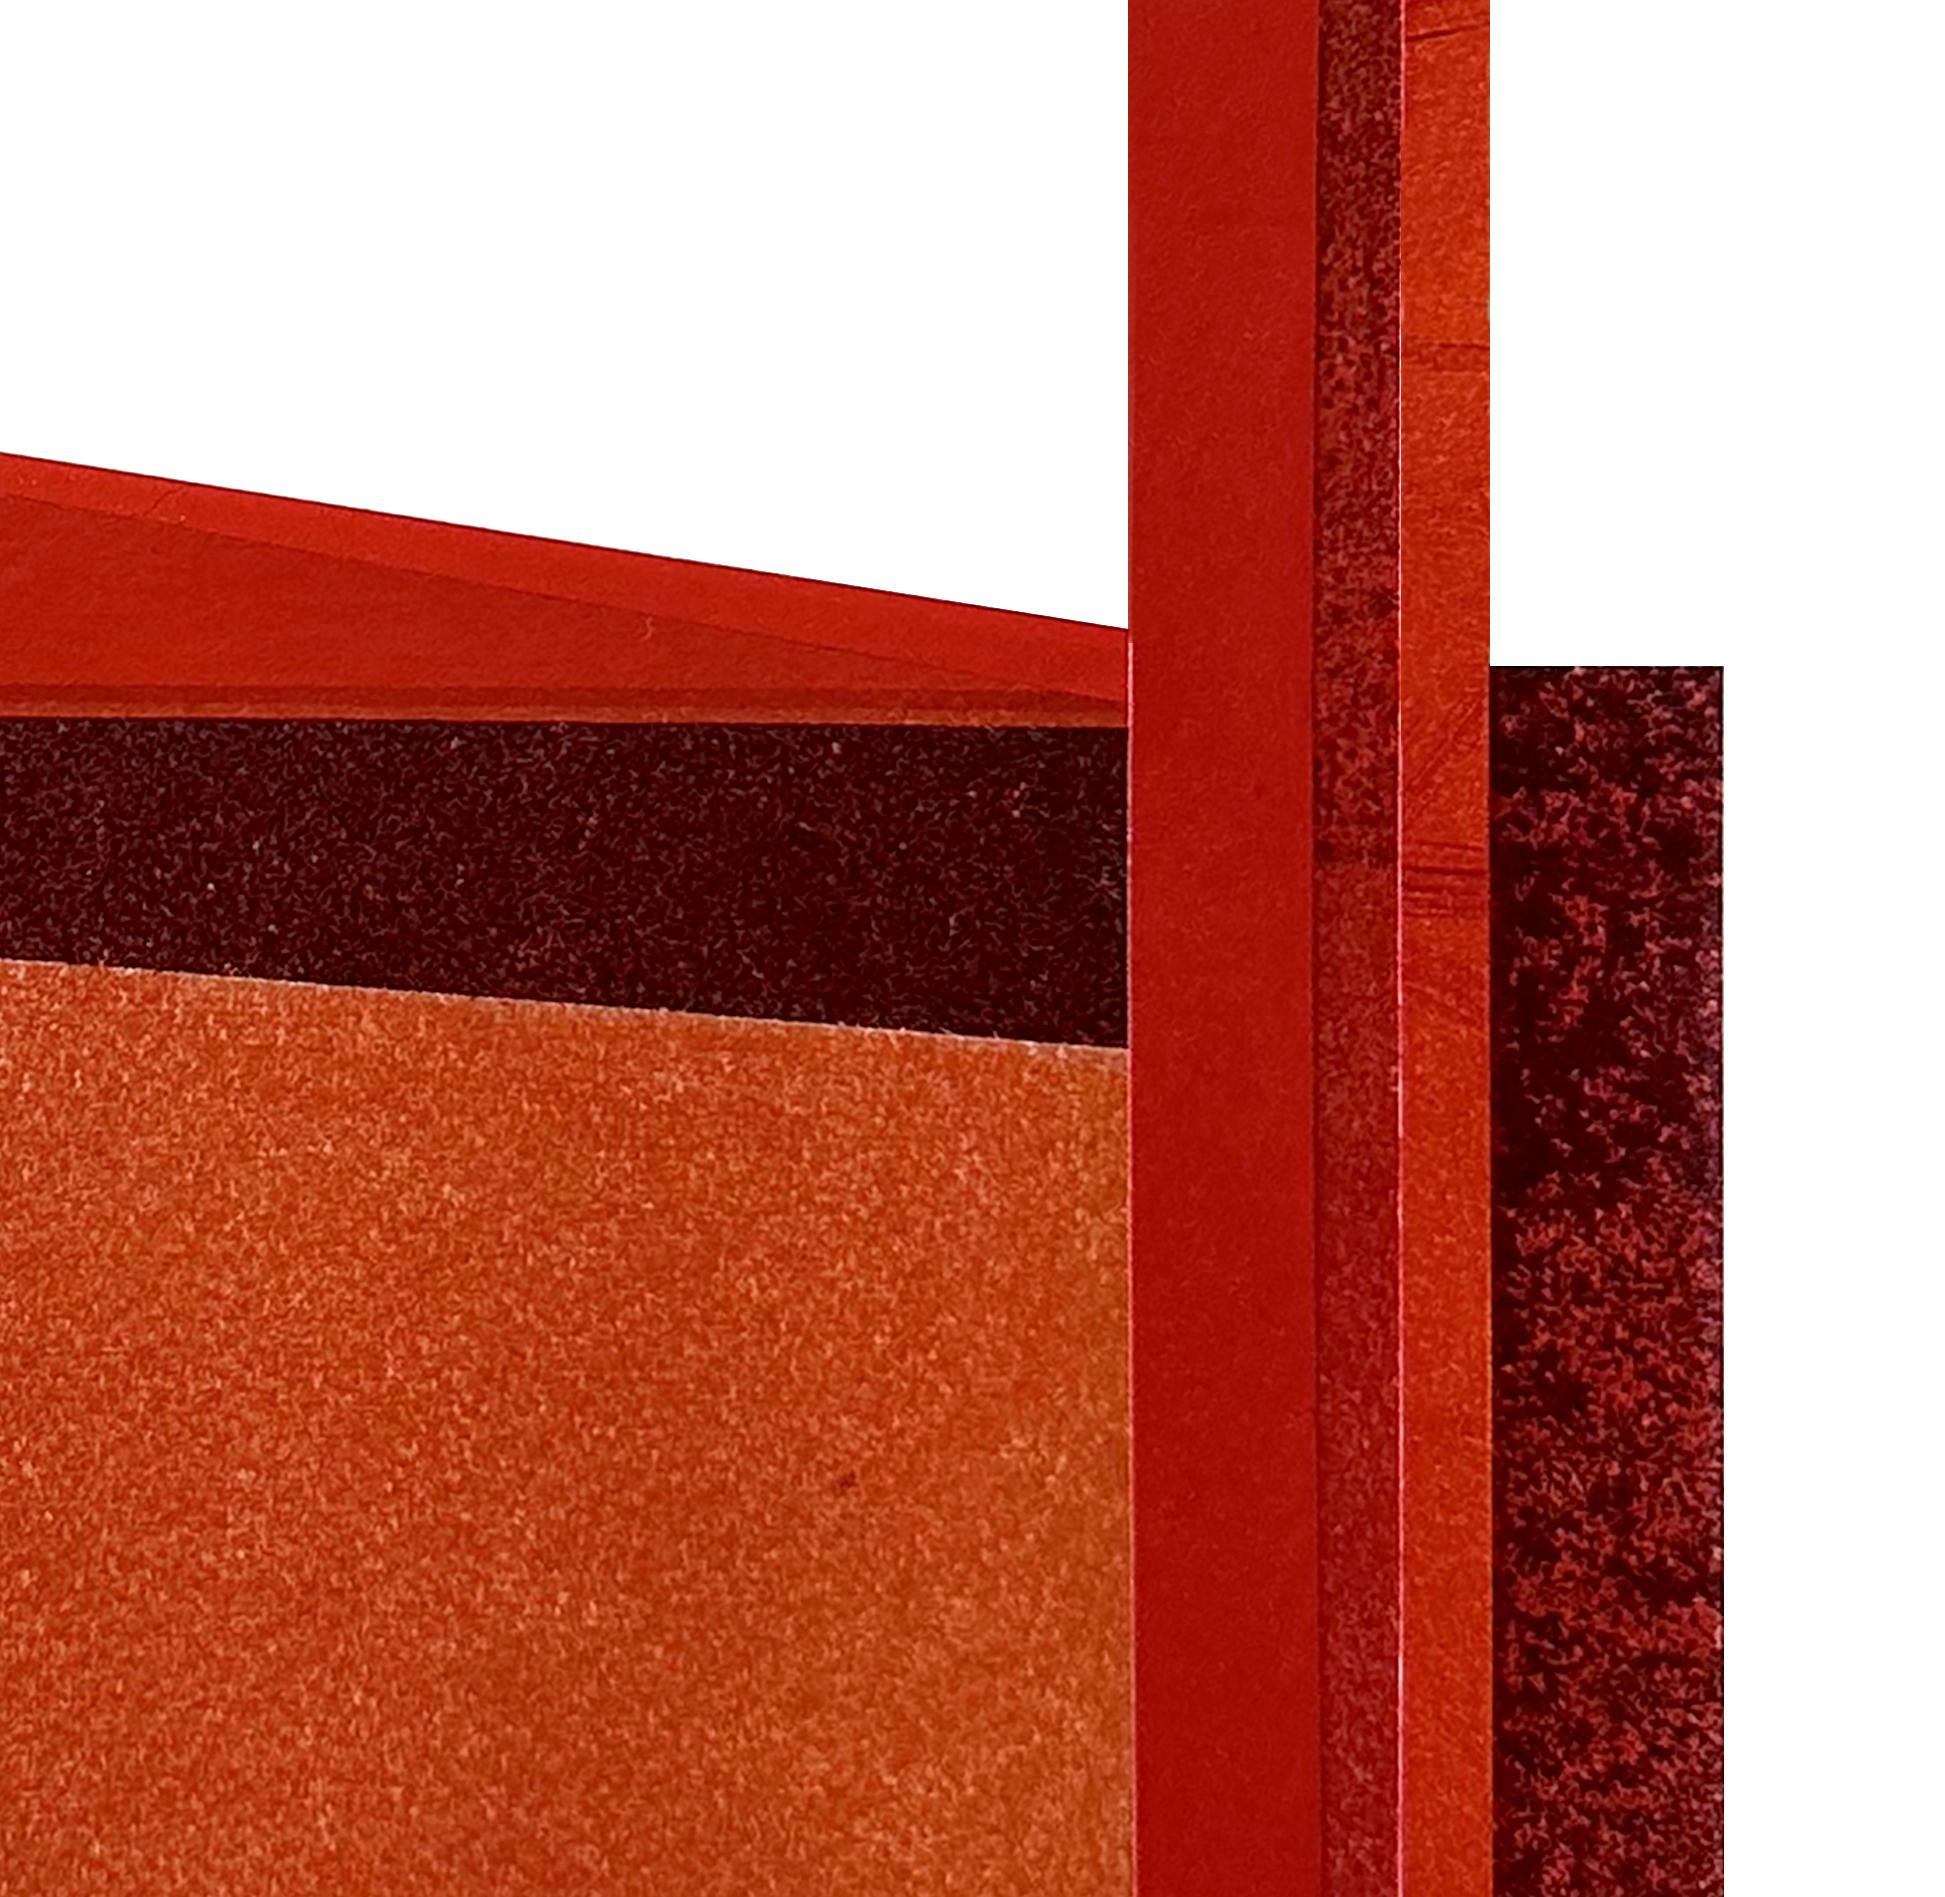 Factory XII : collage architectural urbain moderniste sur monoimpression en rouge, non encadré - Print de Agathe Bouton